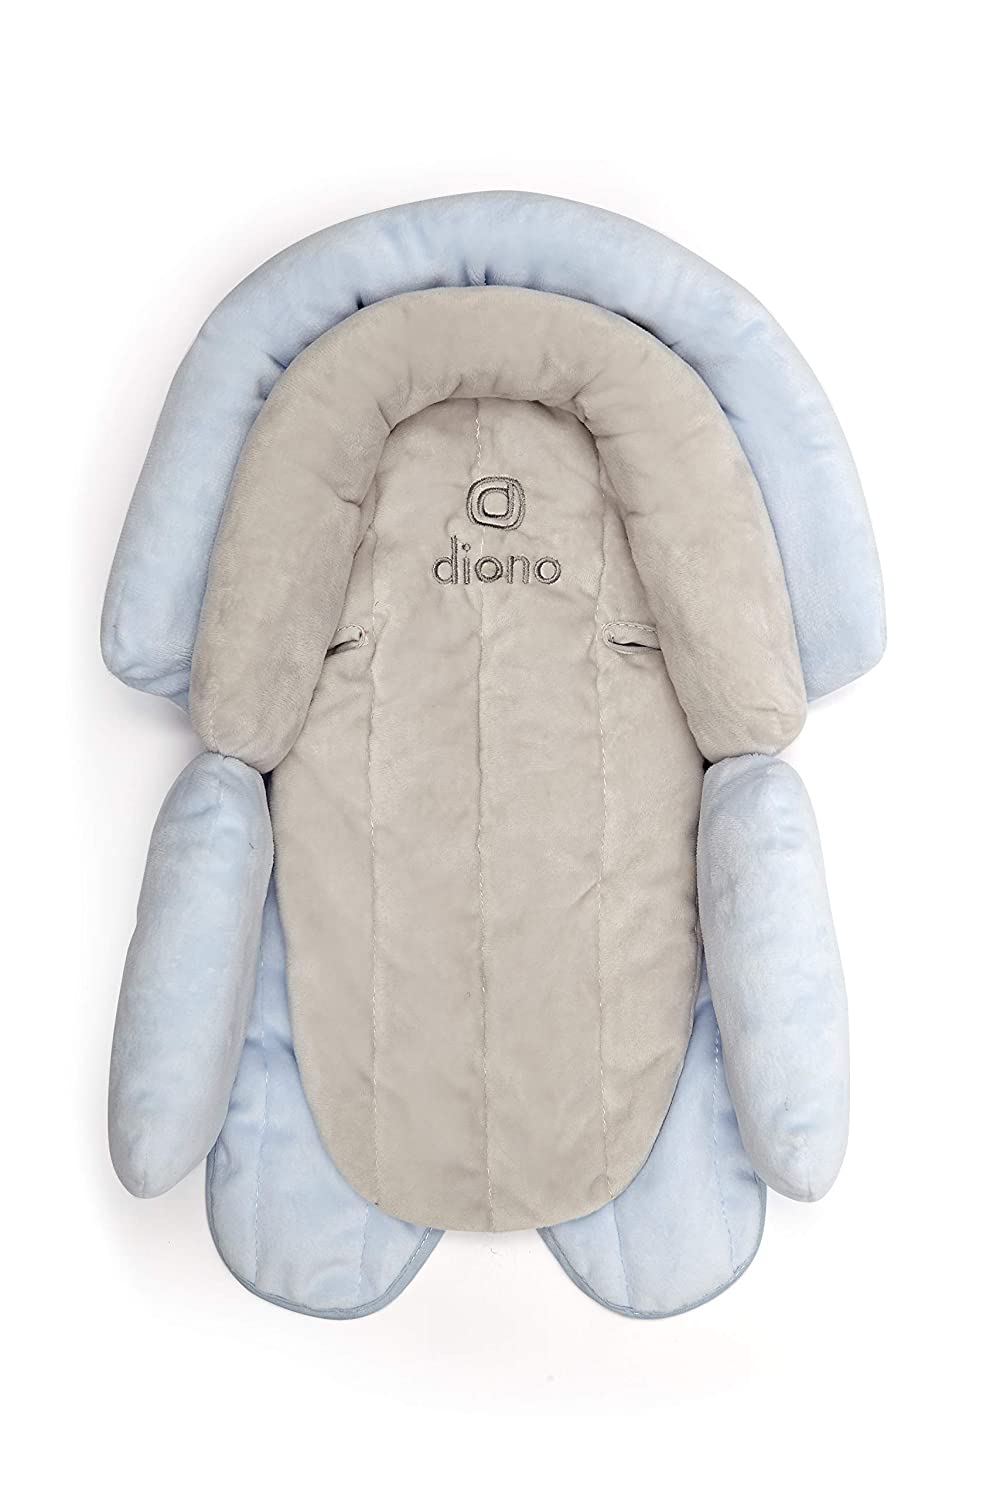 Diono Headrest - Cuddle Soft, Grey/Blue